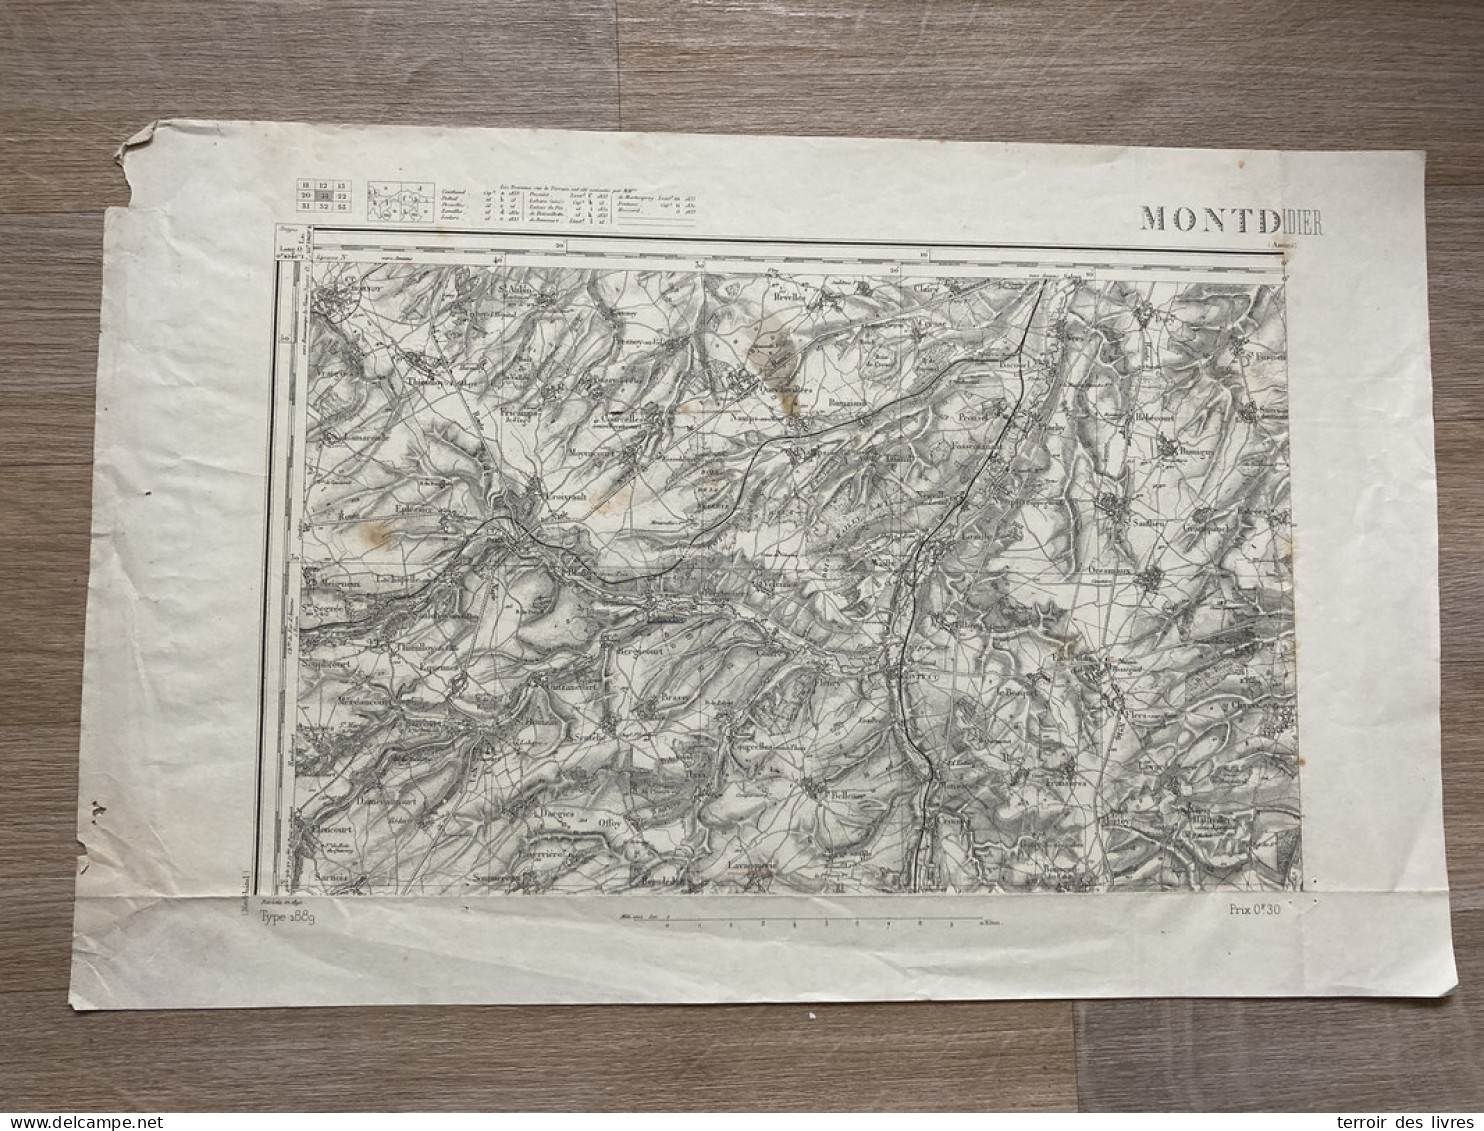 Carte état Major MONTDIDIER 1890 35x54cm WAILLY FAMECHON VELENNES CONTRE BERGICOURT BRASSY FLEURY COURCELLES-SOUS-THOIX  - Geographical Maps